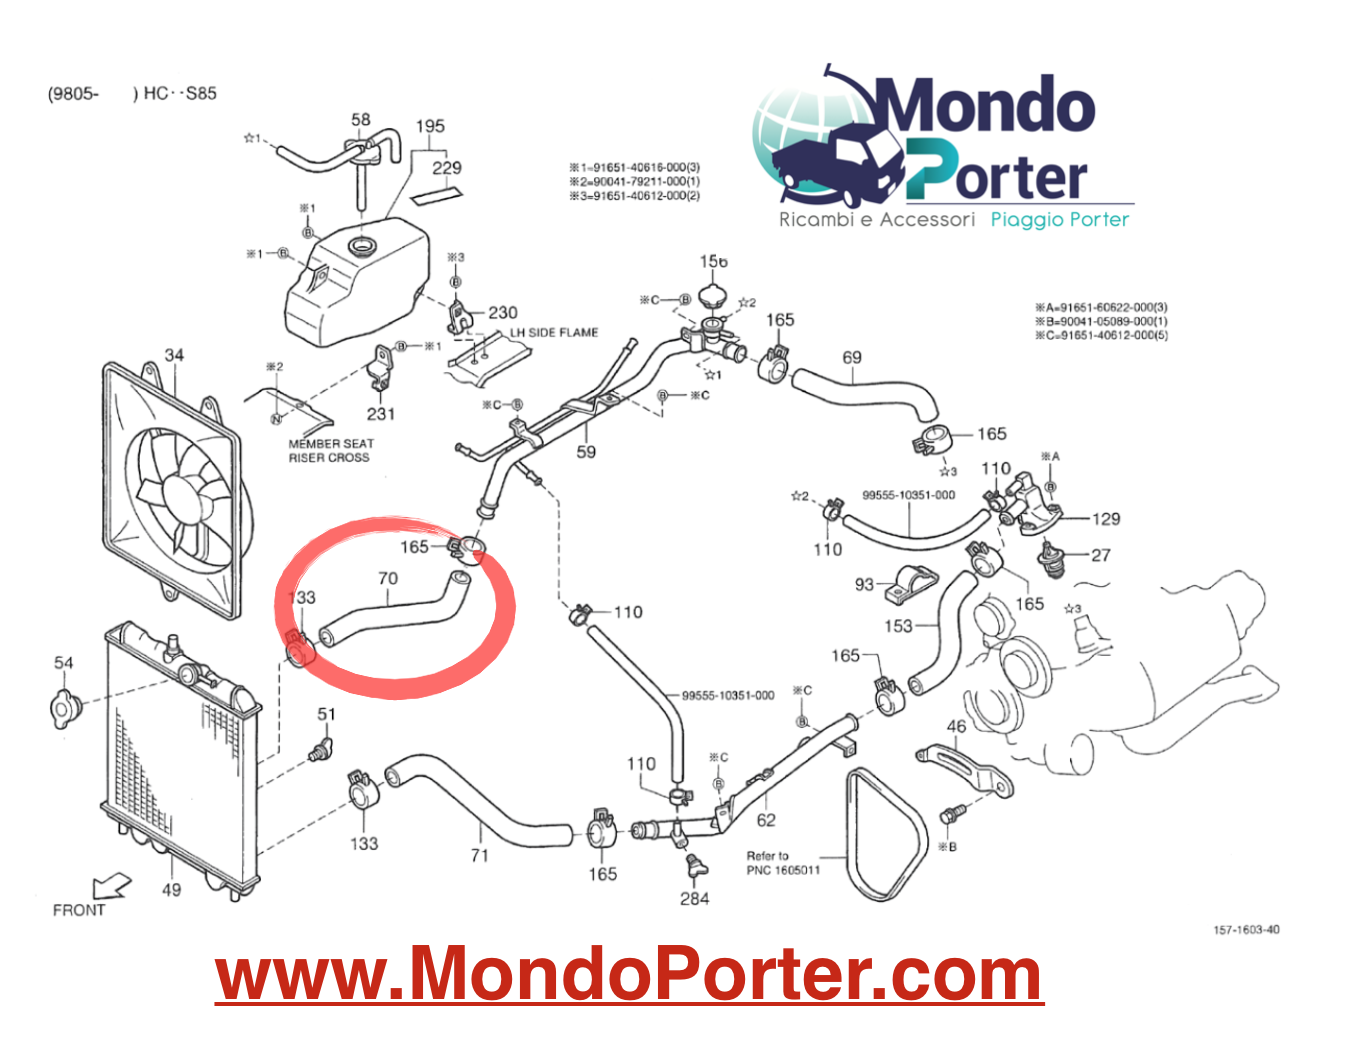 Manicotto Inferiore Radiatore Piaggio Porter 1.3 Benzina 16v - Mondo Porter